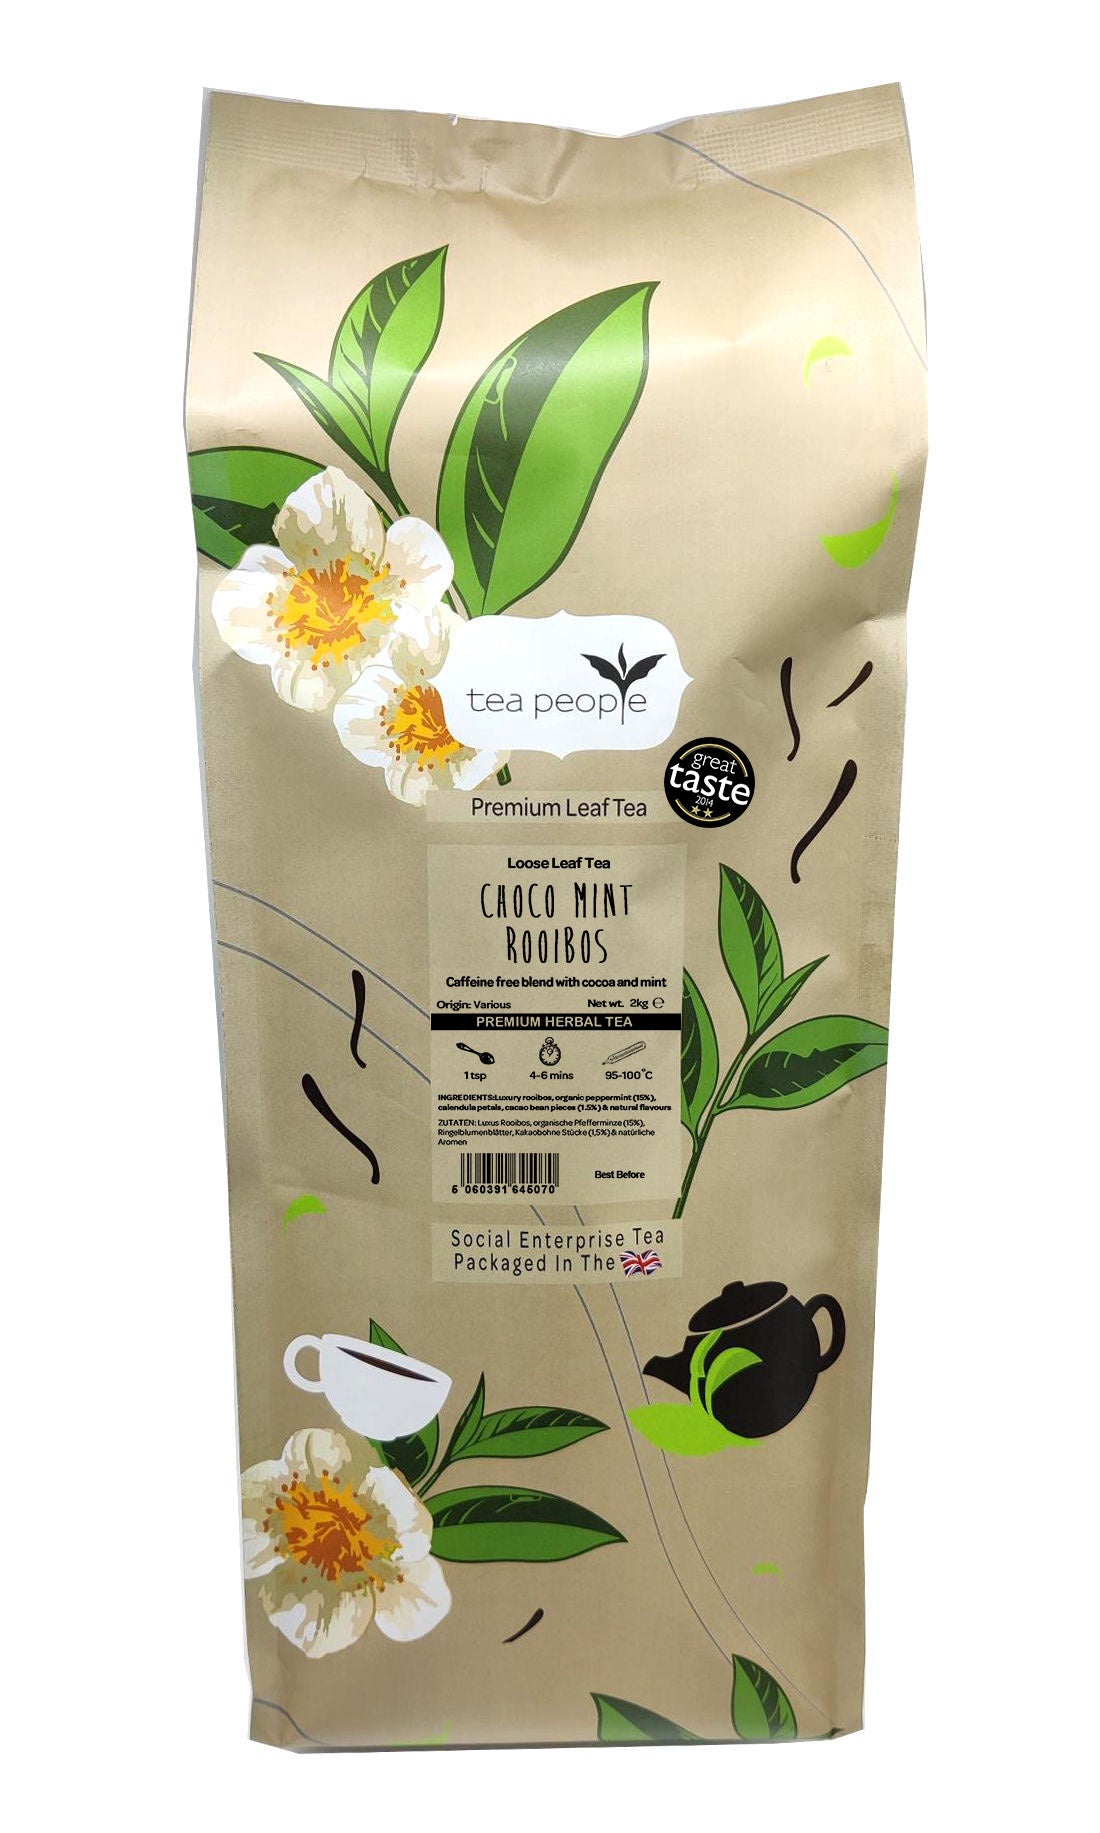 Choco Mint Rooibos - Loose Herbal Tea - 2kg Large Catering Pack